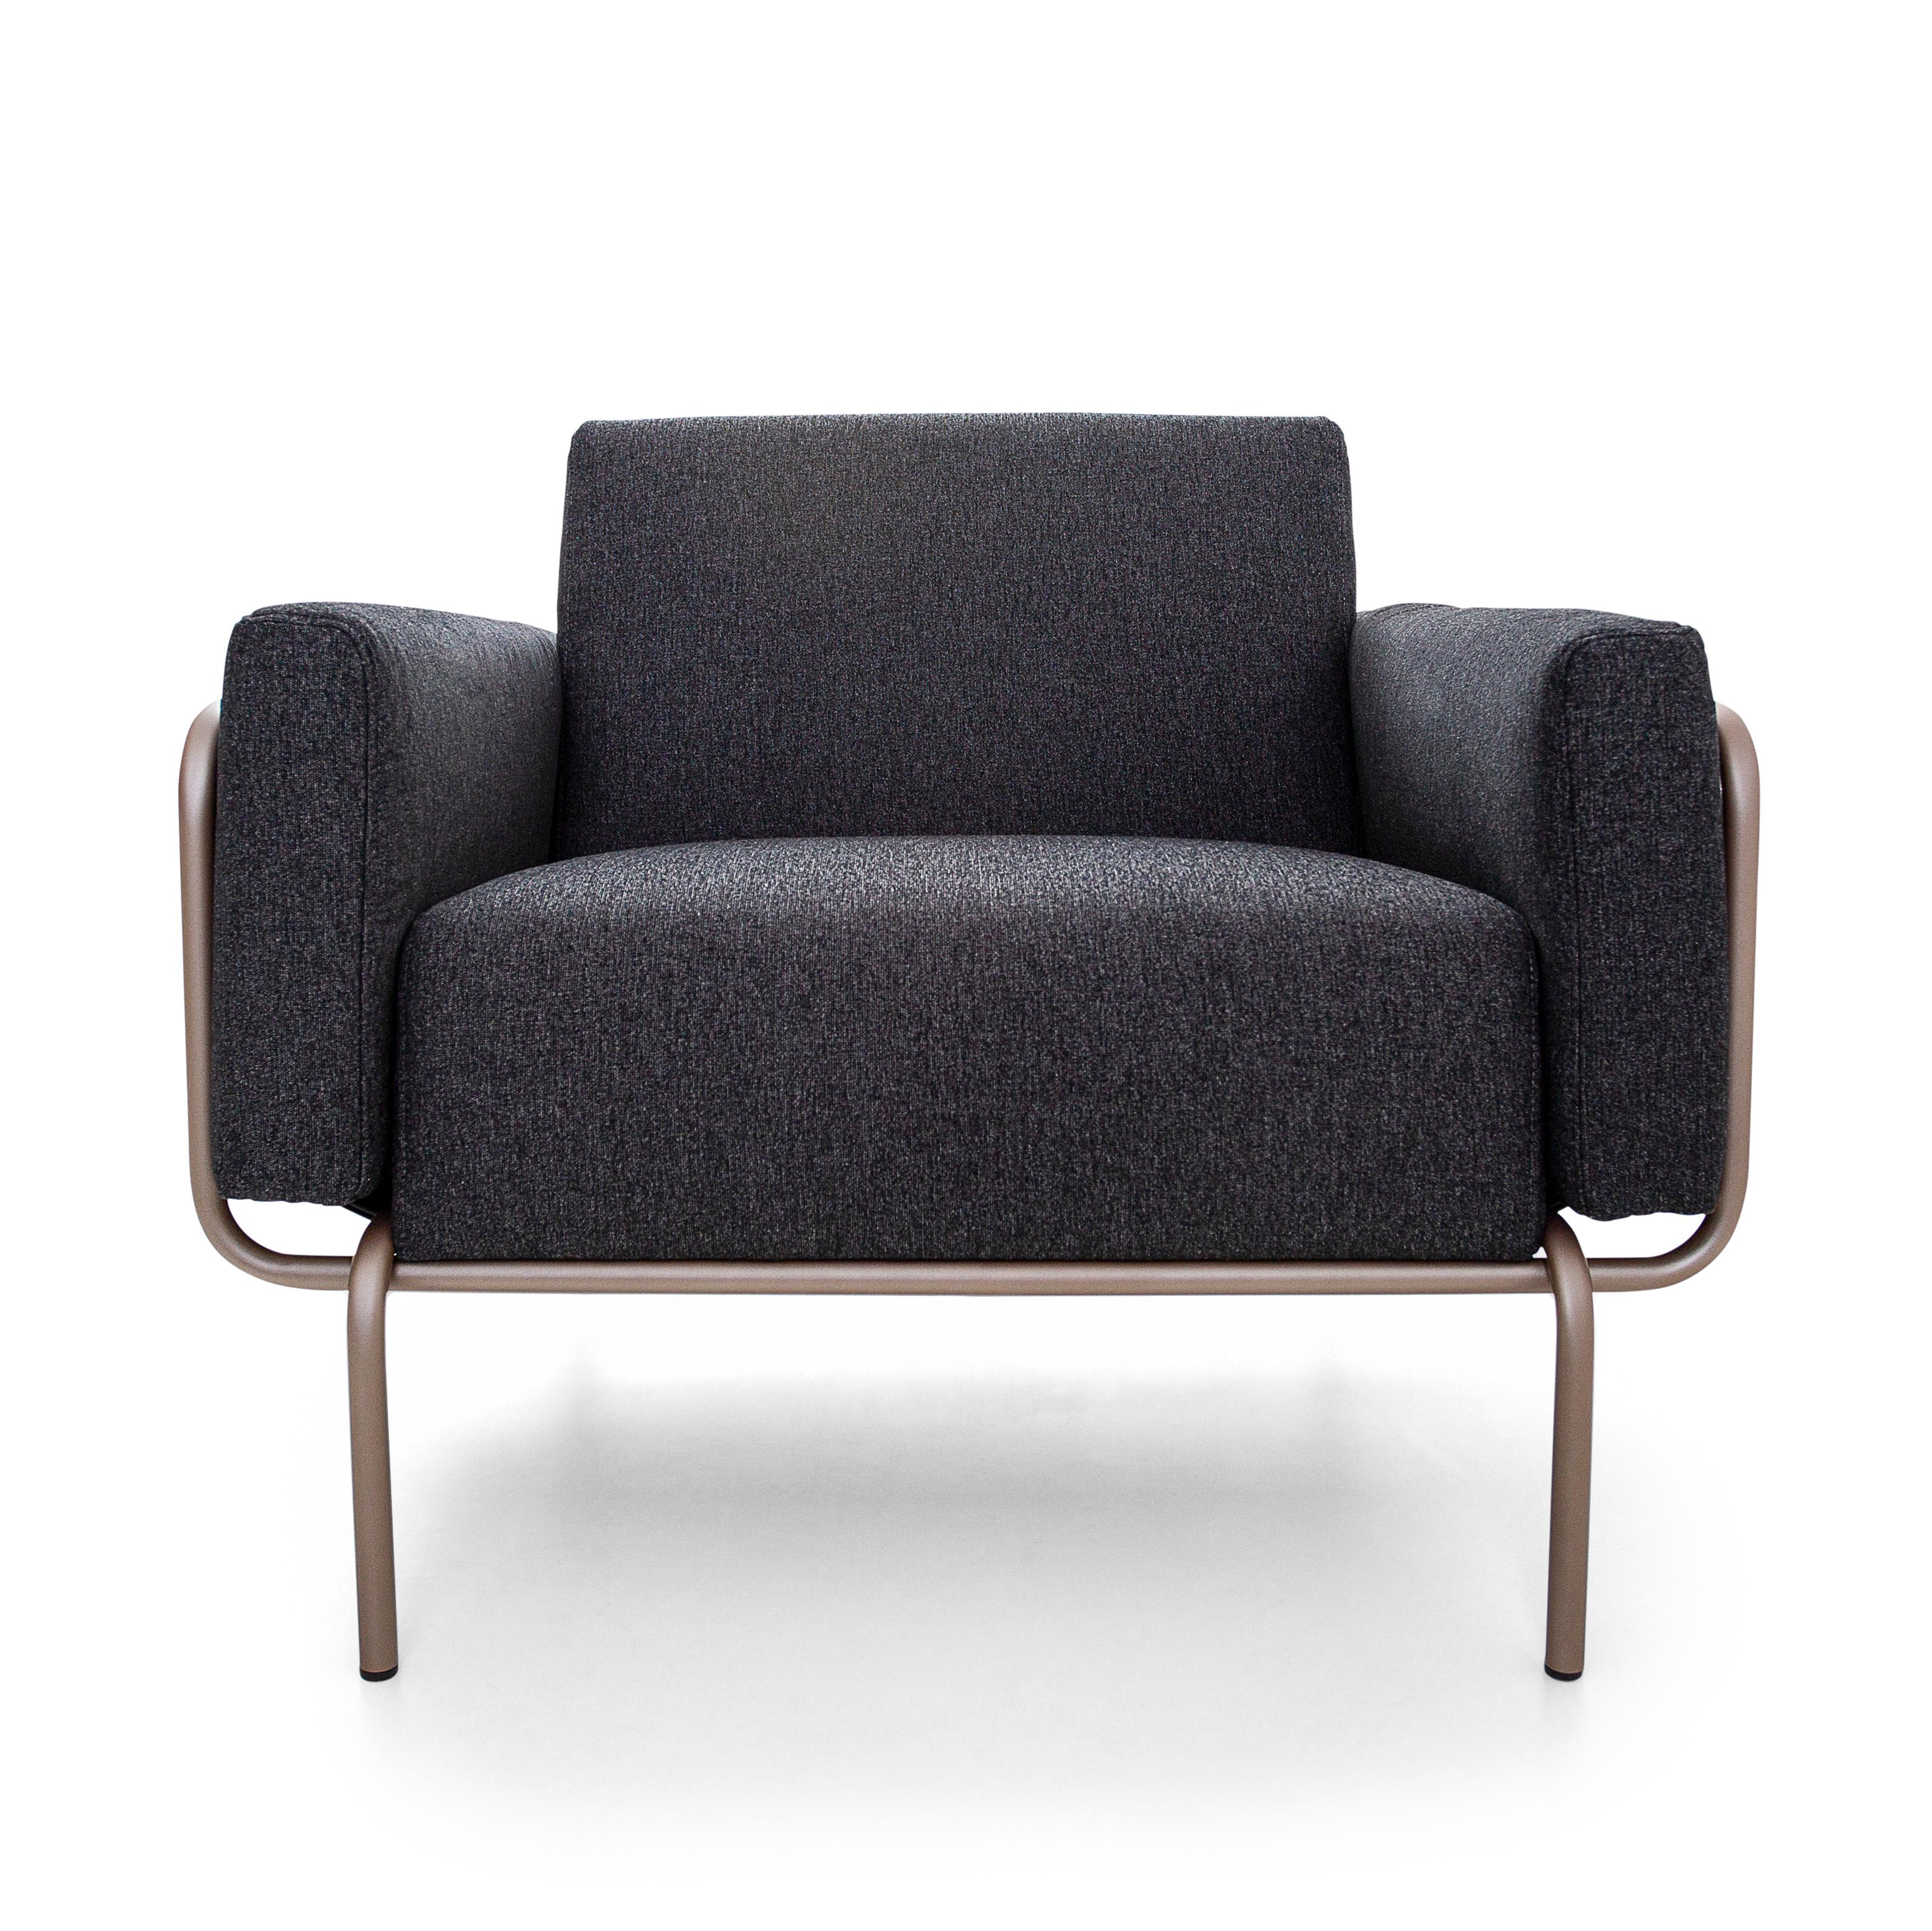 Das Uultis Design-Team hat diesen schönen Trend-Sessel entworfen, der mit einem schönen schwarzen Stoff bezogen ist und ein Gestell aus rosafarbenem Quarzmetall sowie eine schwarze Ledertasche aufweist. Dieser Sessel im zeitgenössischen Stil wurde